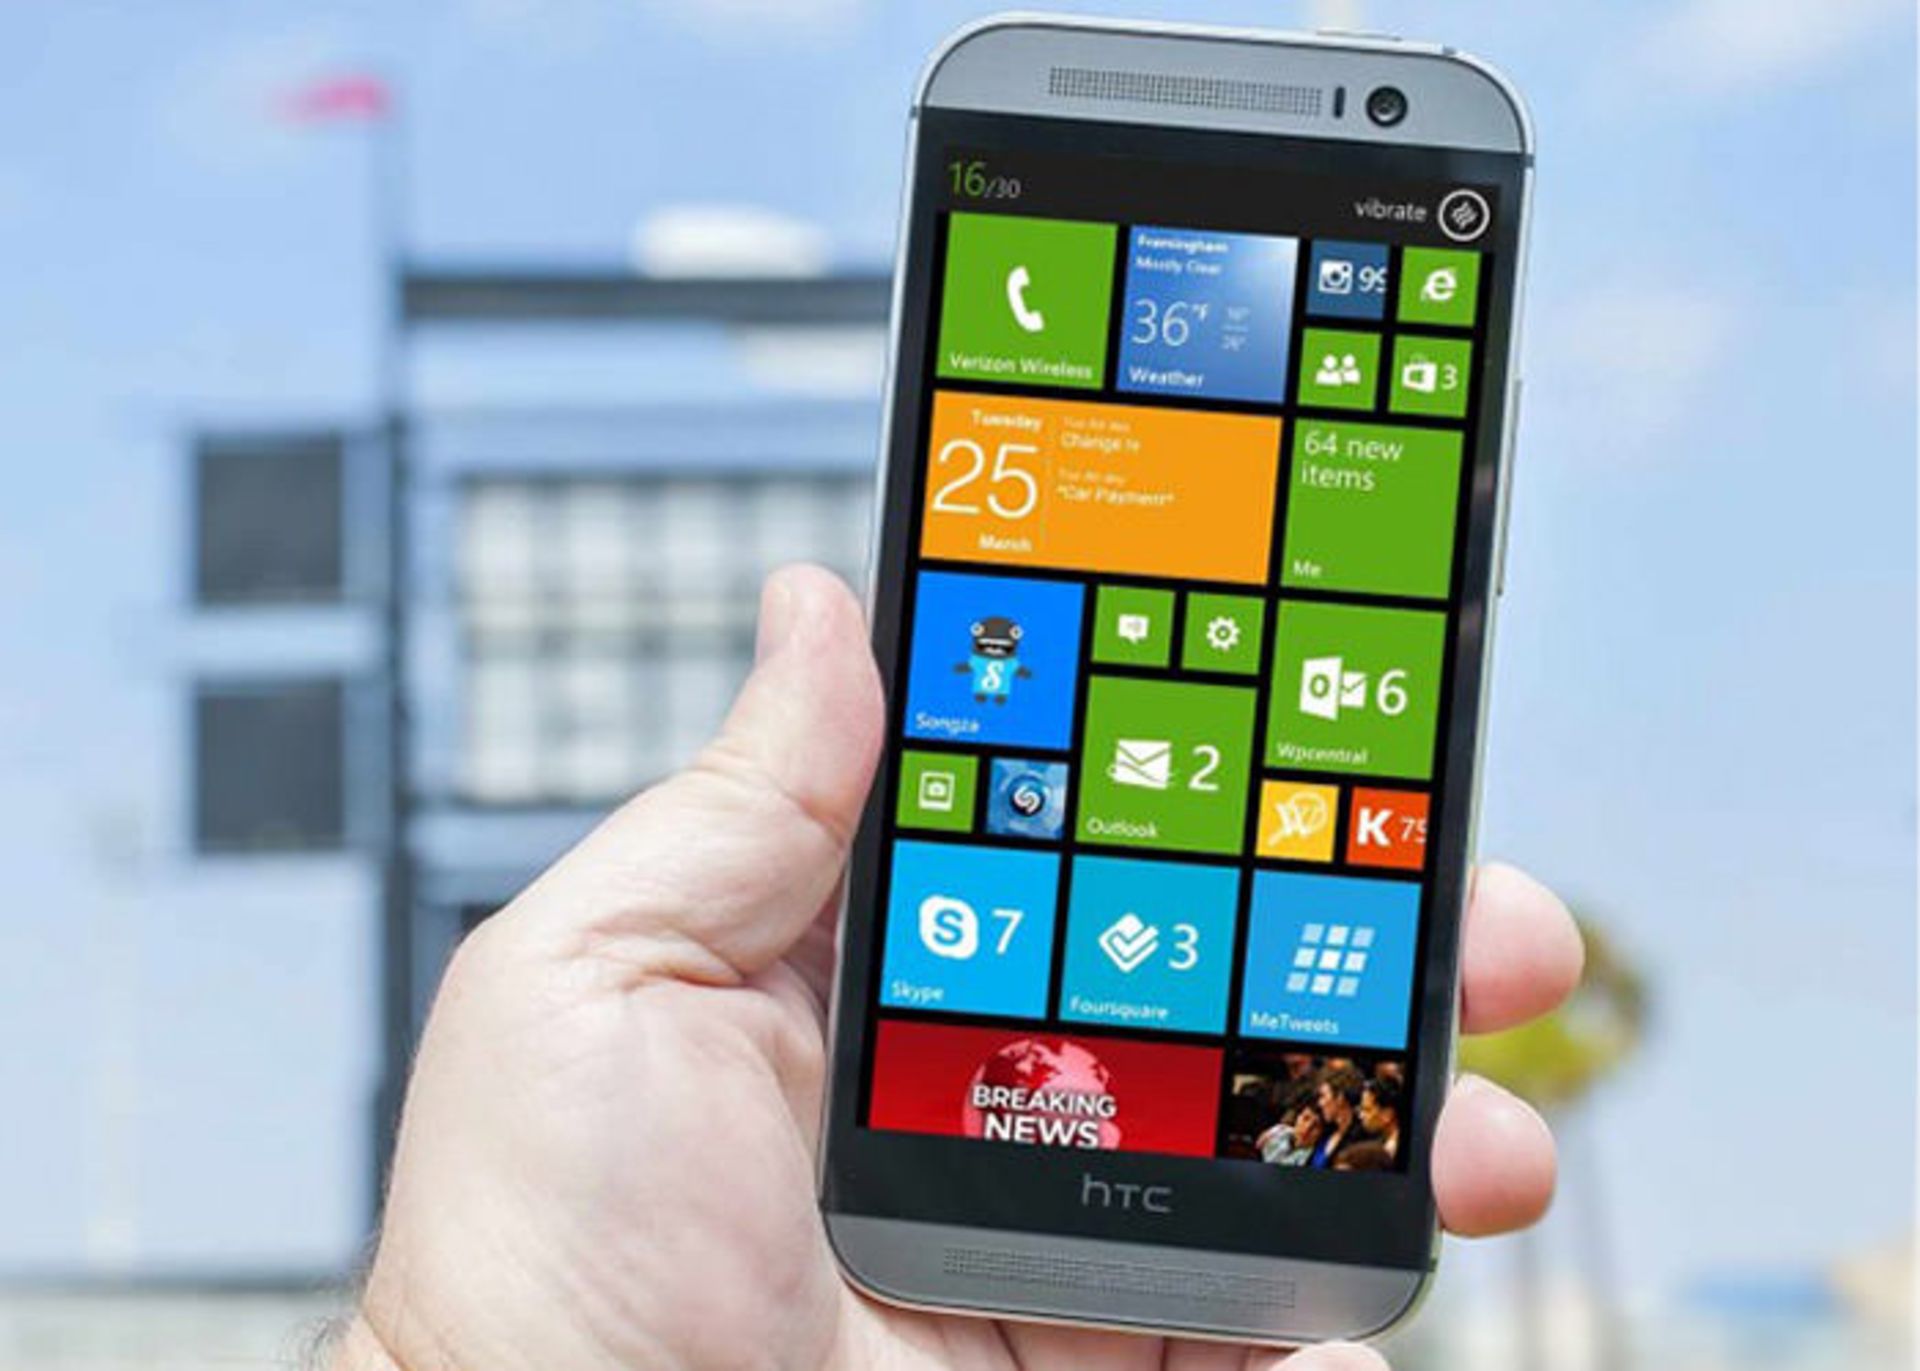 Windows Phone HTC One